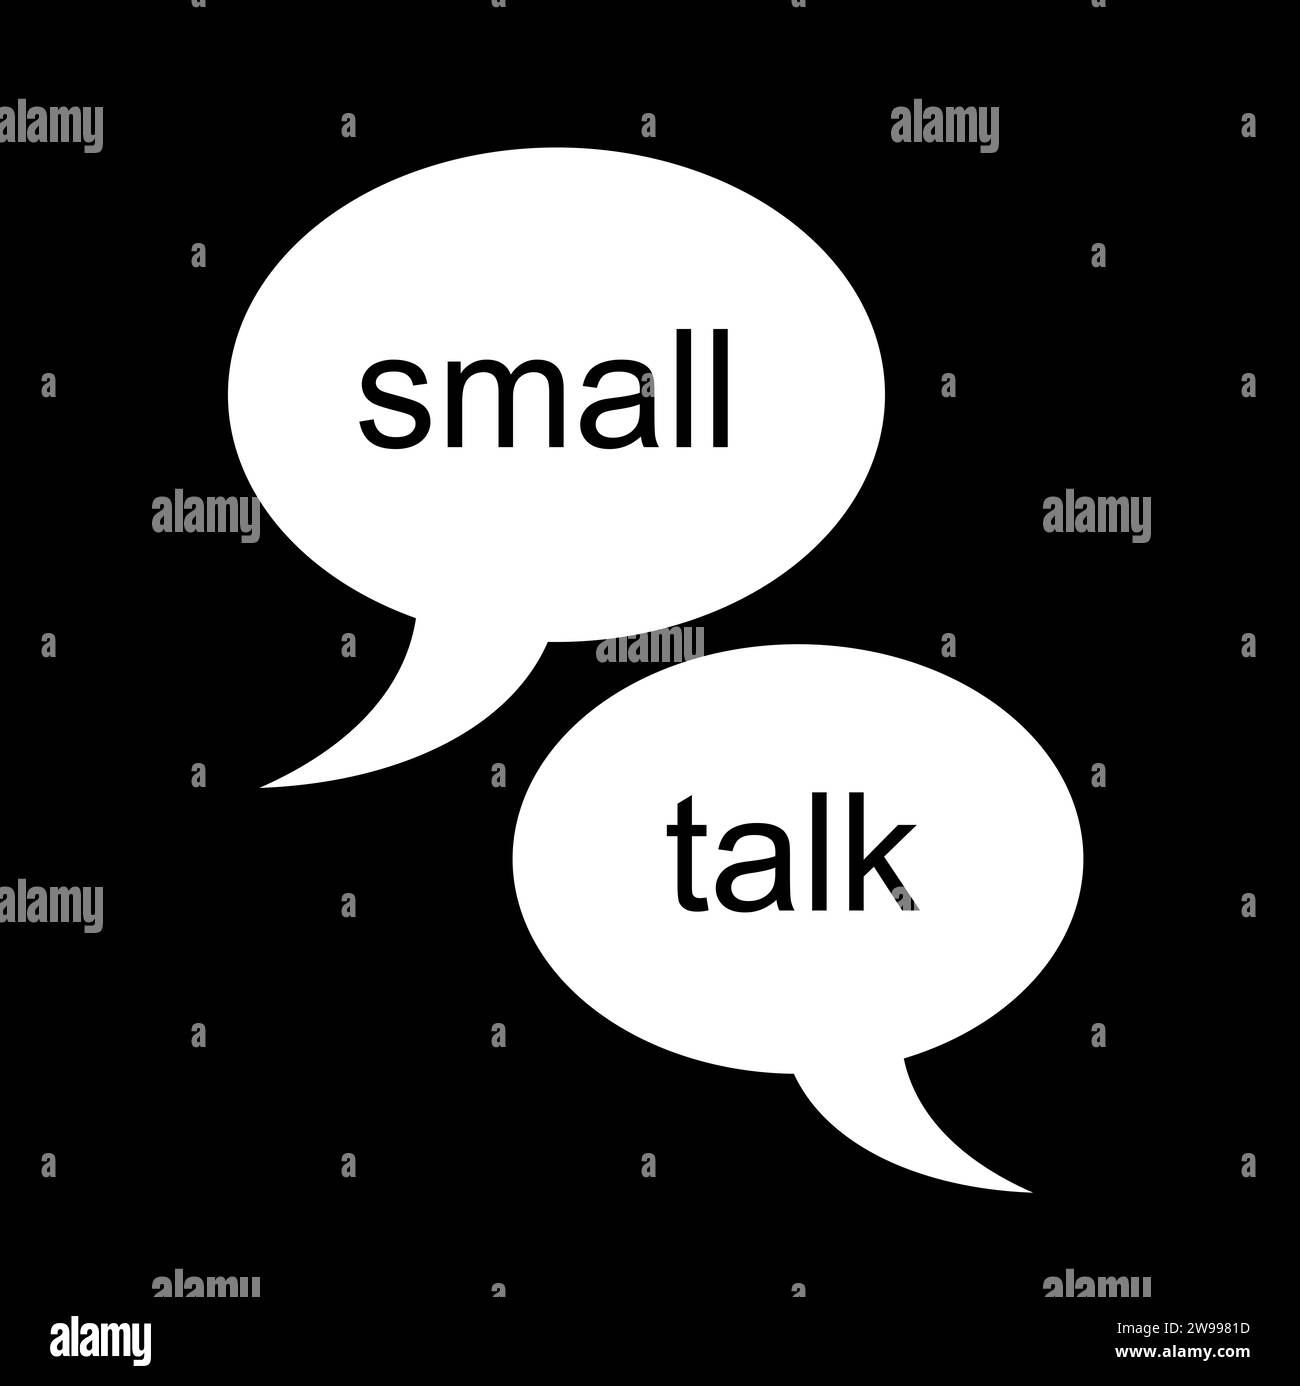 Pequeña charla, smalltalk. comunicación y conversación interpersonal informal, banal y superficial. Socialización a través del lenguaje y la interacción verbal Foto de stock